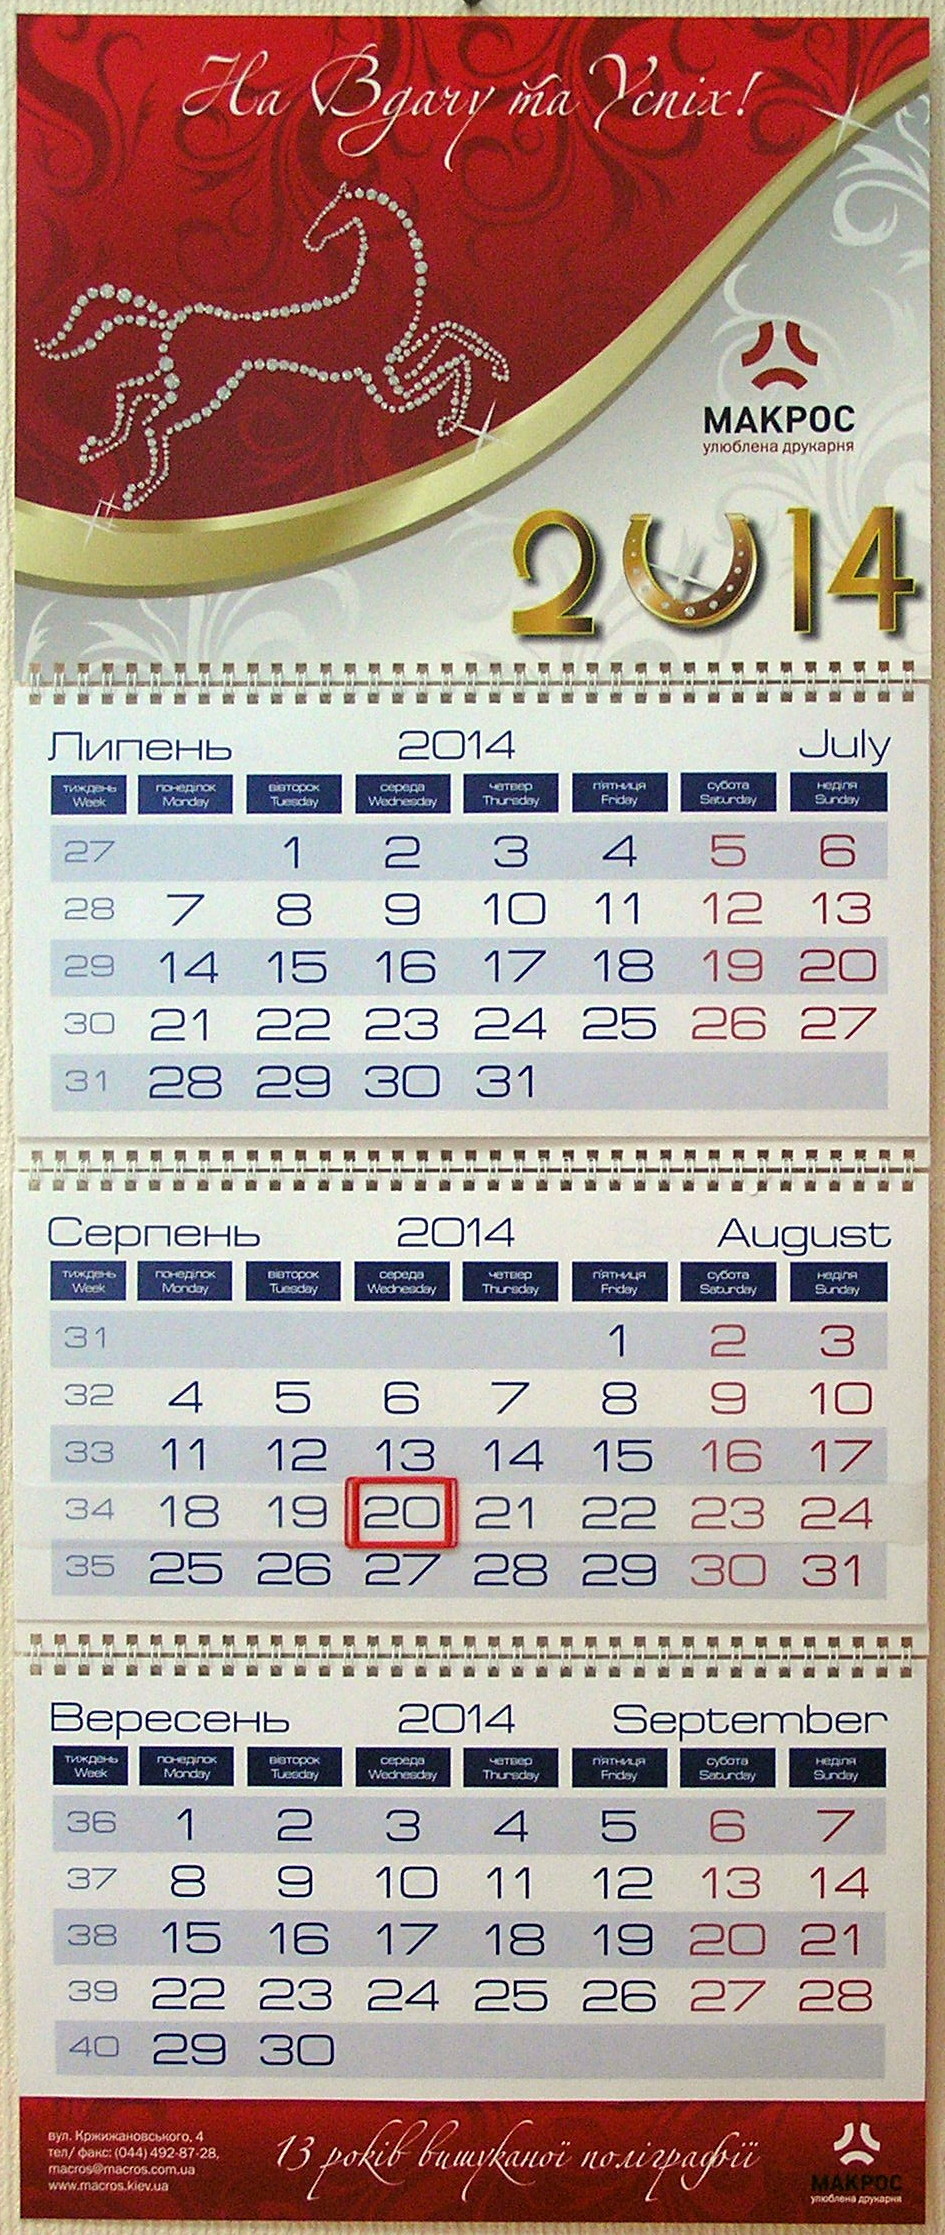 Печать квартальных календарей «Макрос». Полиграфия типографии Макрос, изготовление квартальных календарей, спецификация 966996-1